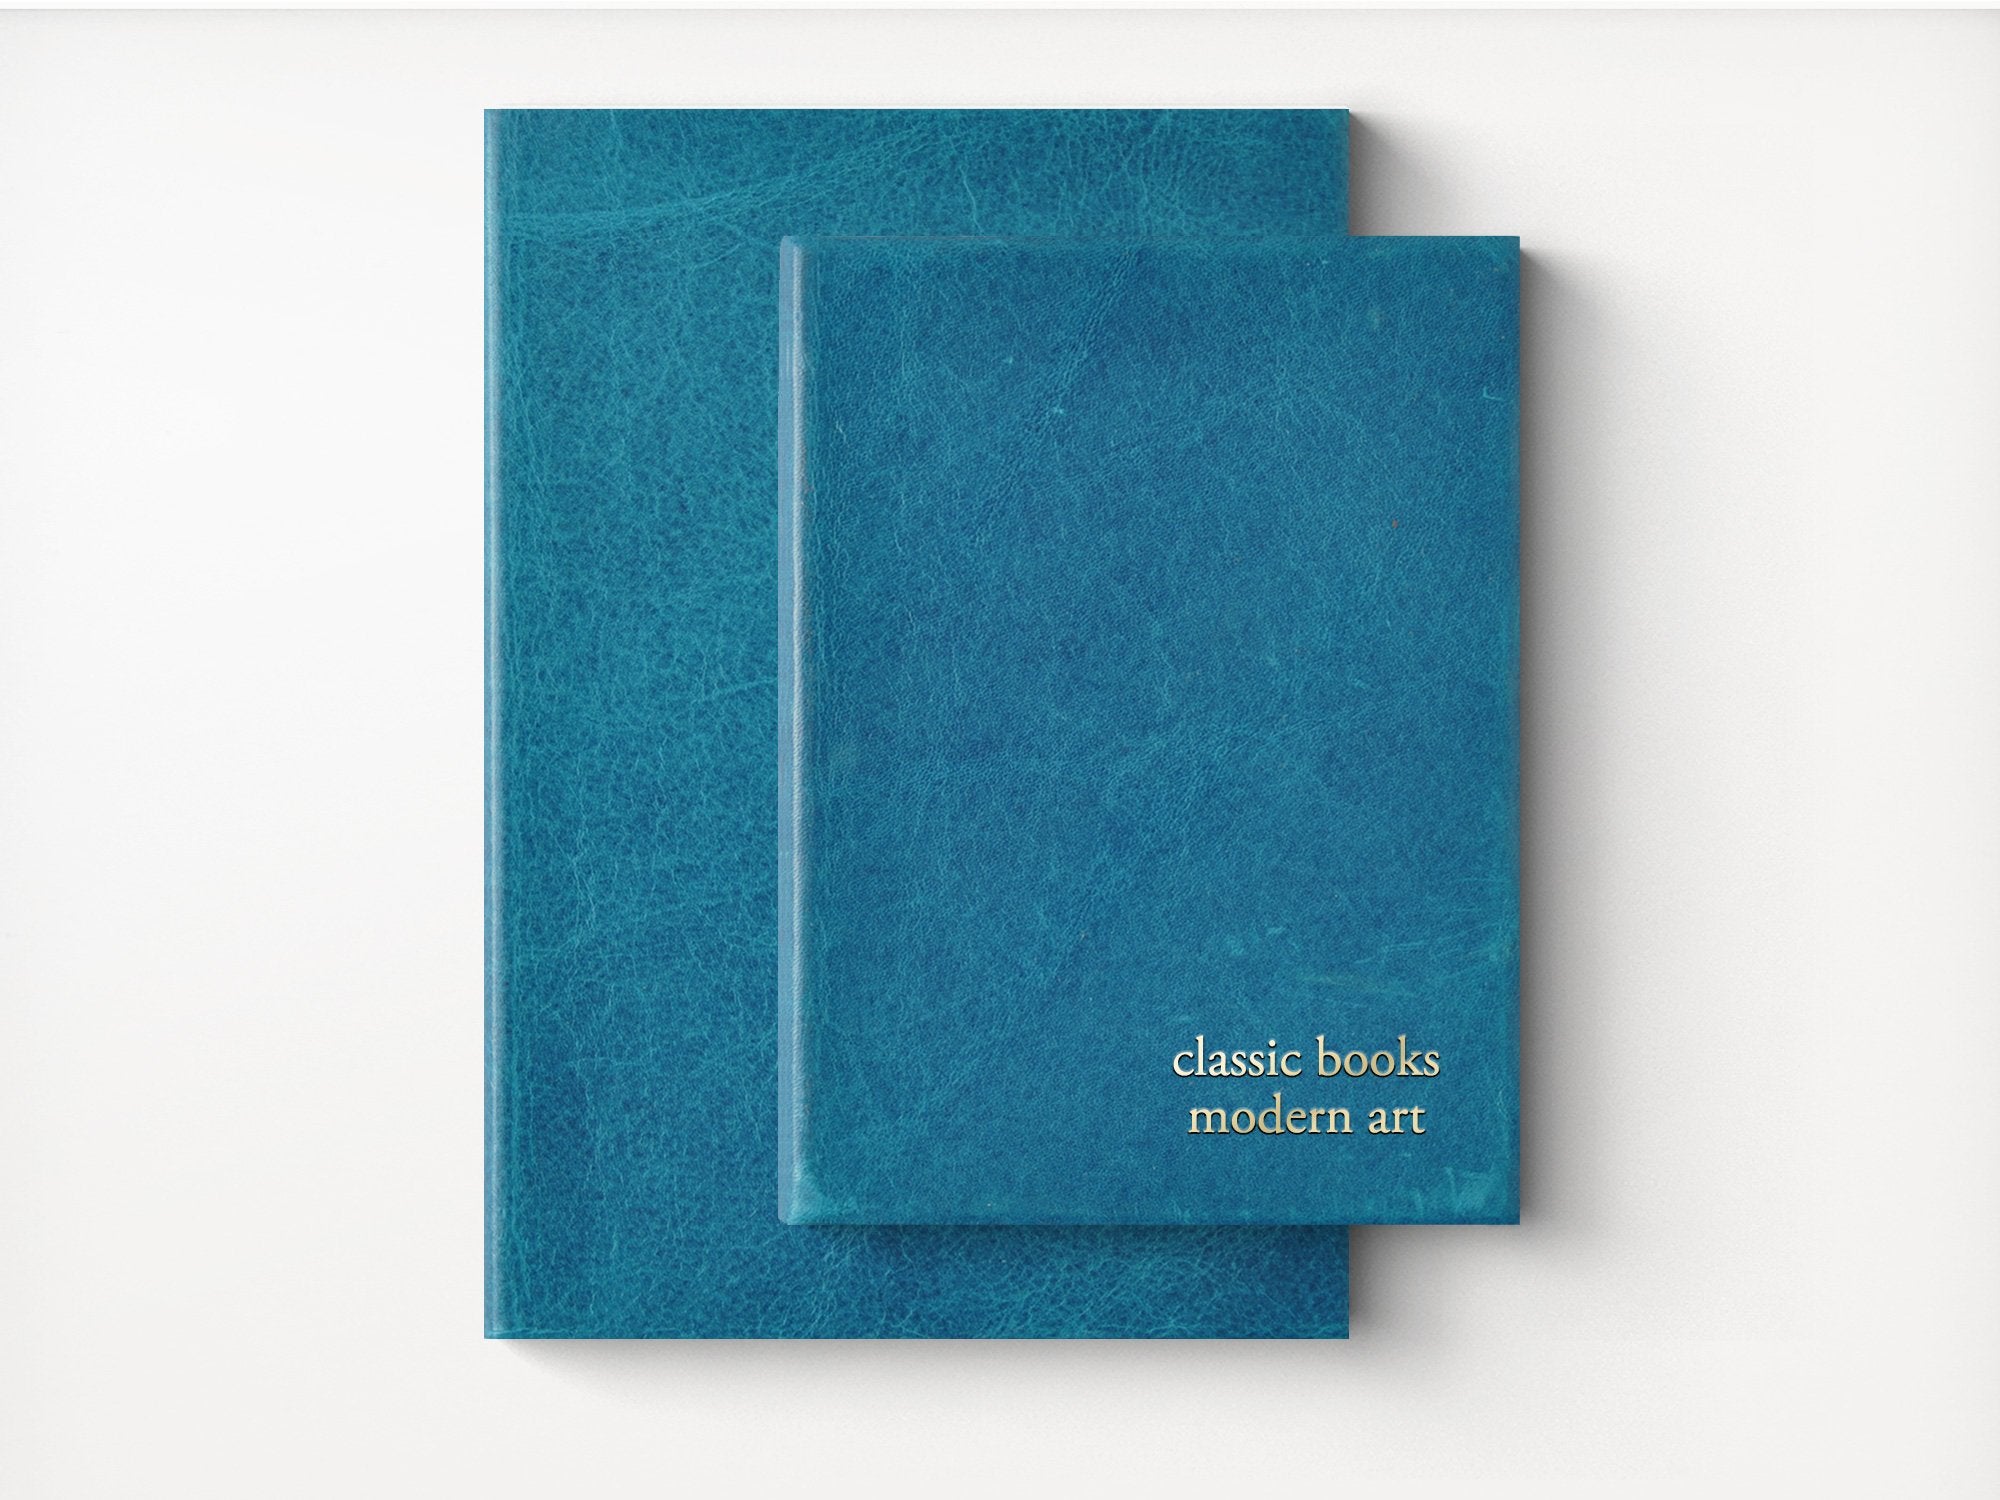 Mount Everest Extra Large Leather Sketchbook – Jenni Bick Custom Journals